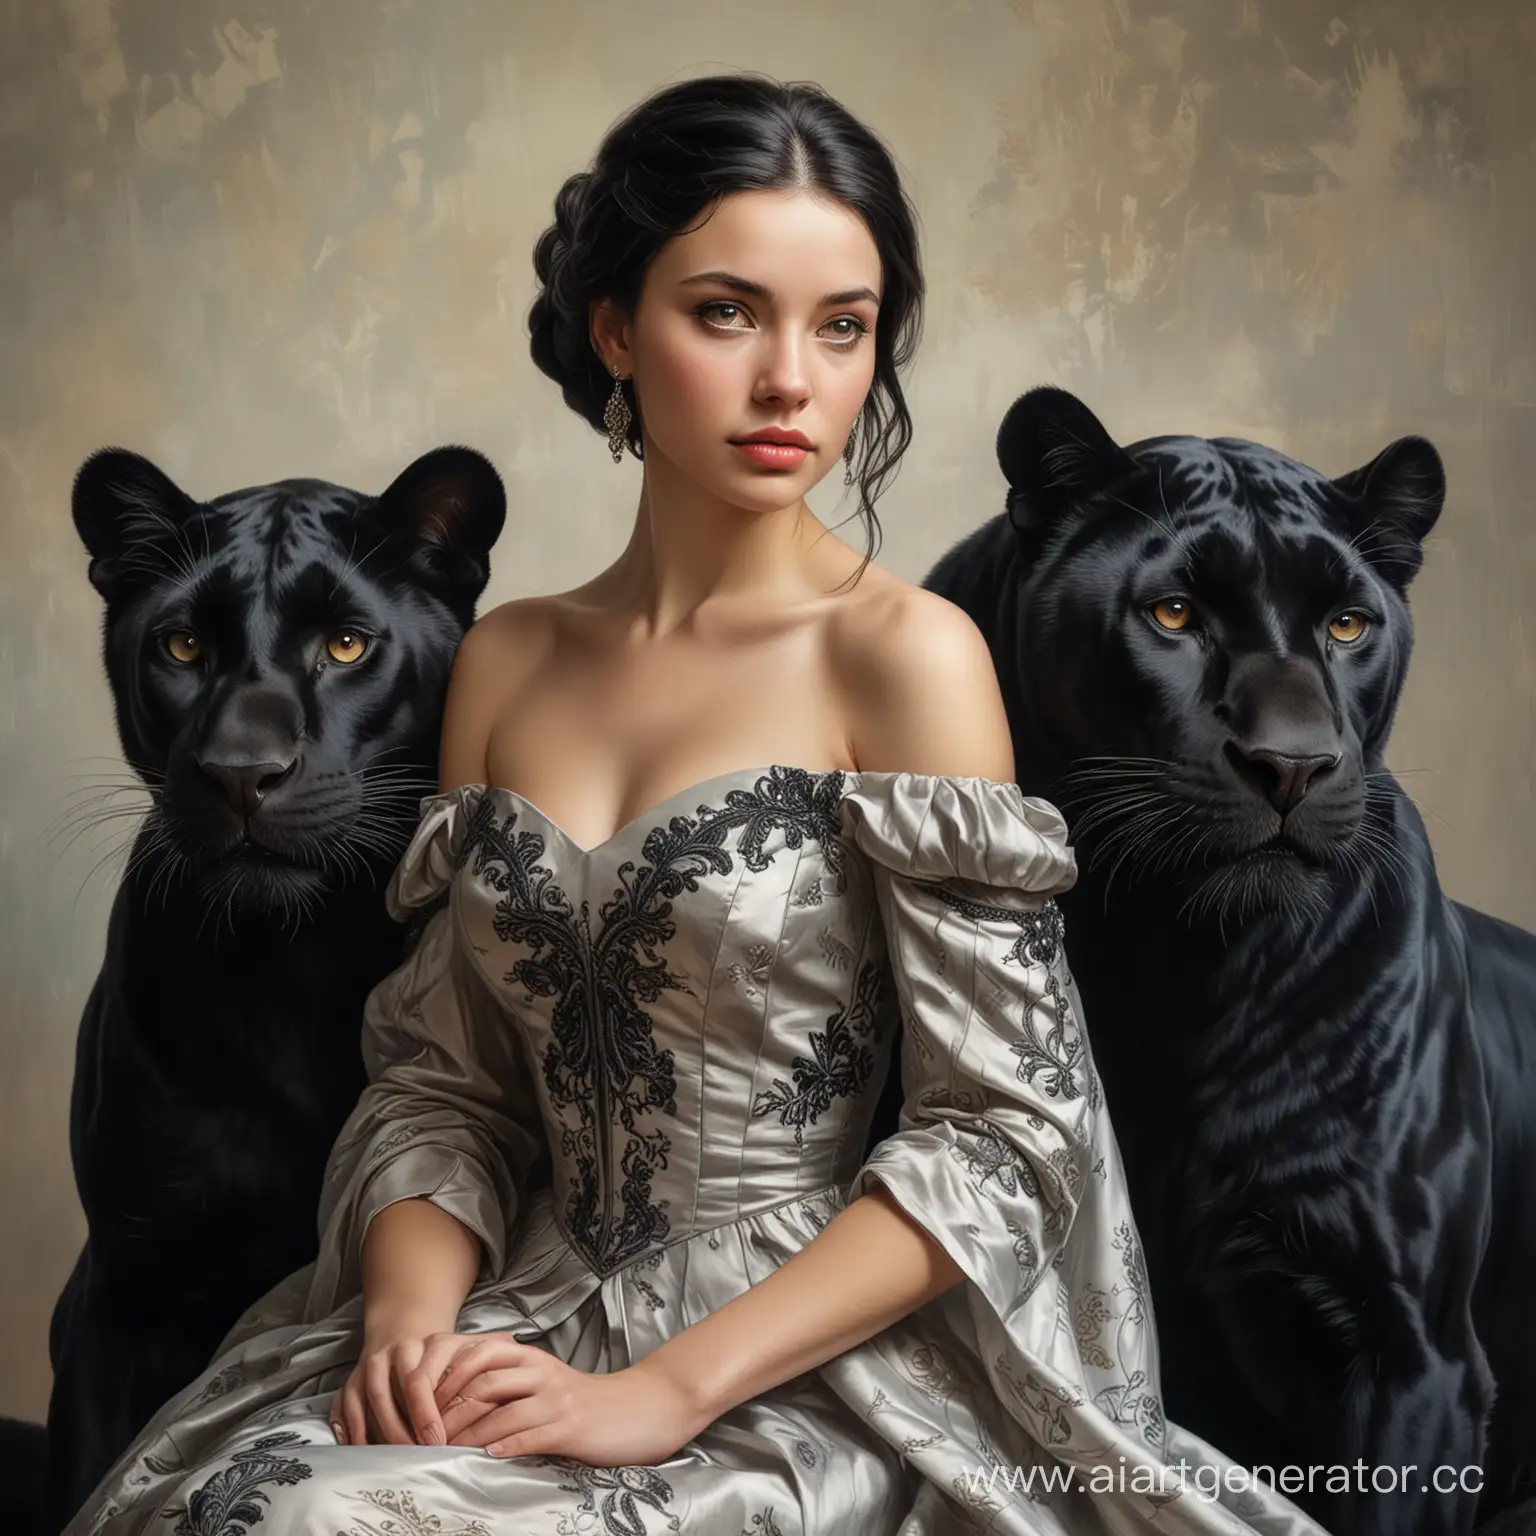 Молодая девушка русской национальности с черными волосами  до плеч в изящном платье и справа от неё сидит большая черная пантера. Реализм